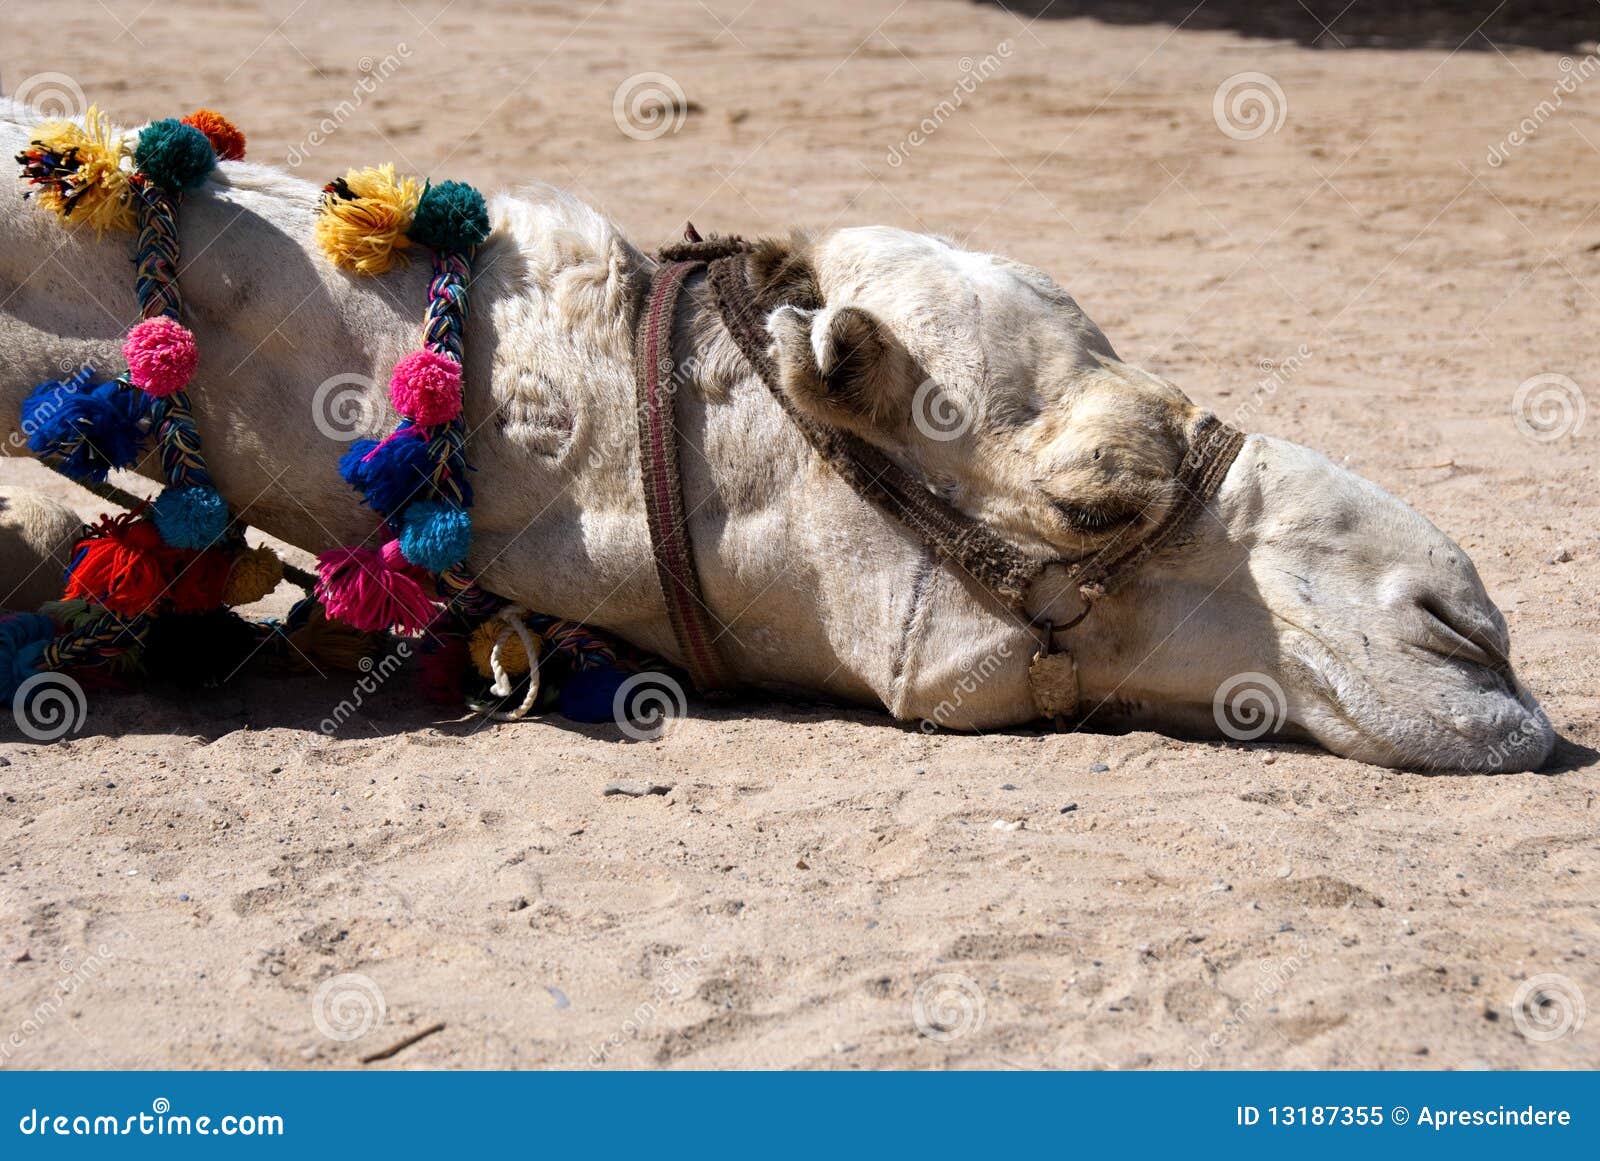 lazy camel